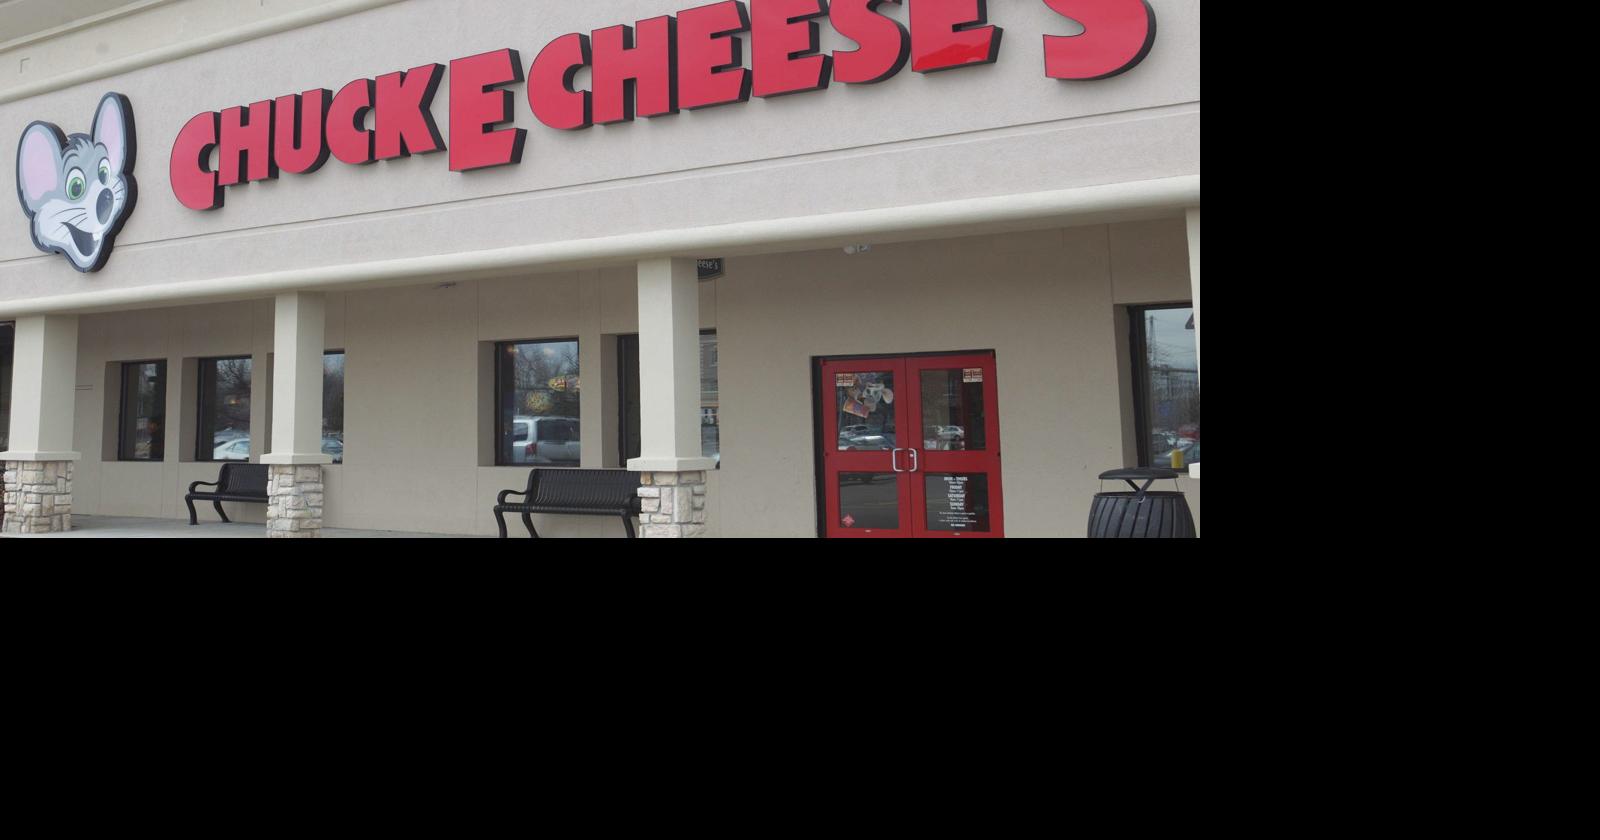 Chuck E Cheese Closes One Wny Location